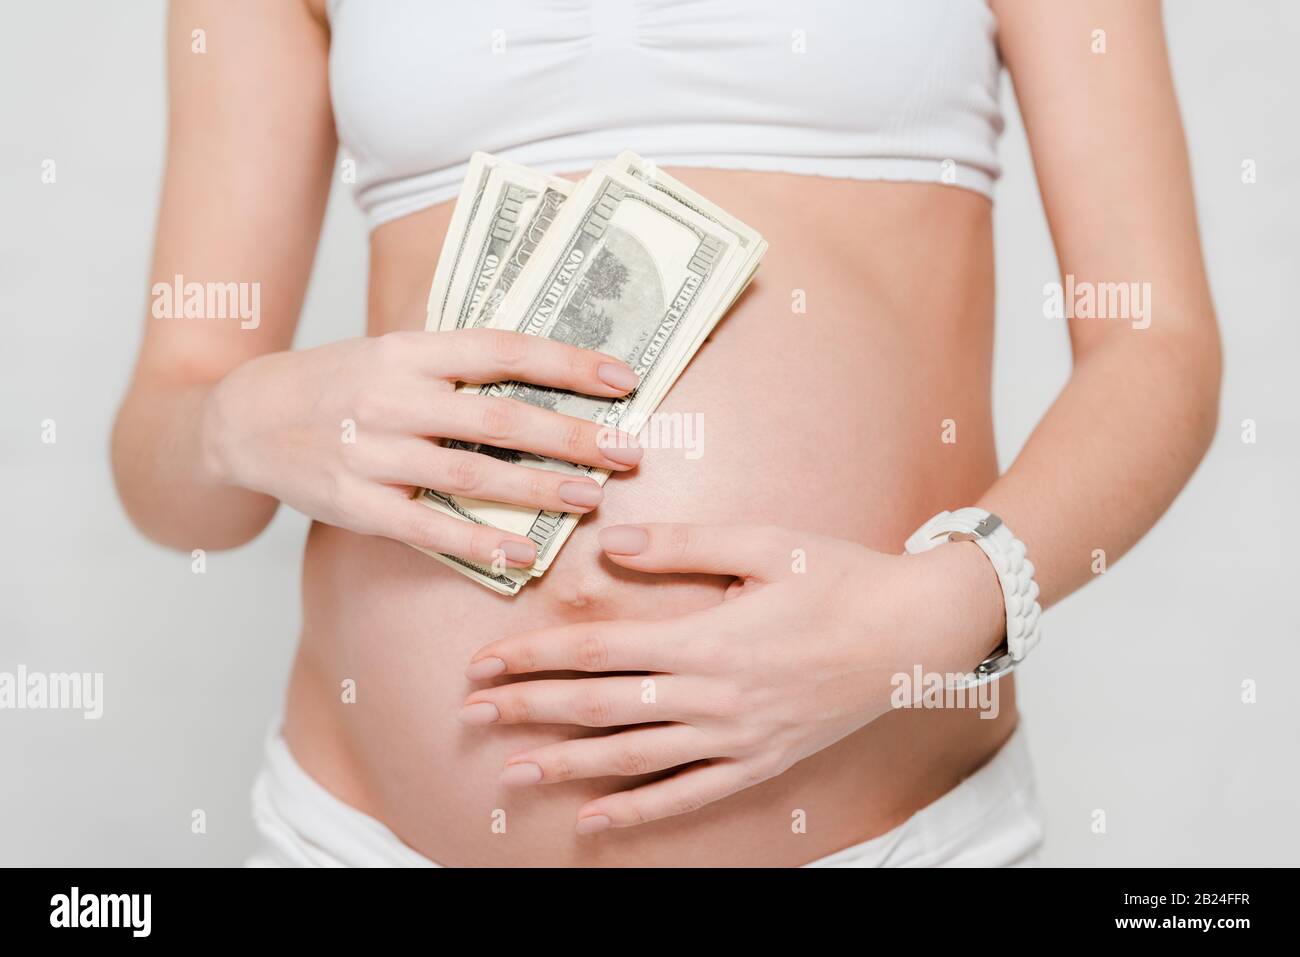 Vue rognée de la femme enceinte qui détient des billets en dollars près du ventre sur fond gris, concept de maternité de mères porteuses Banque D'Images